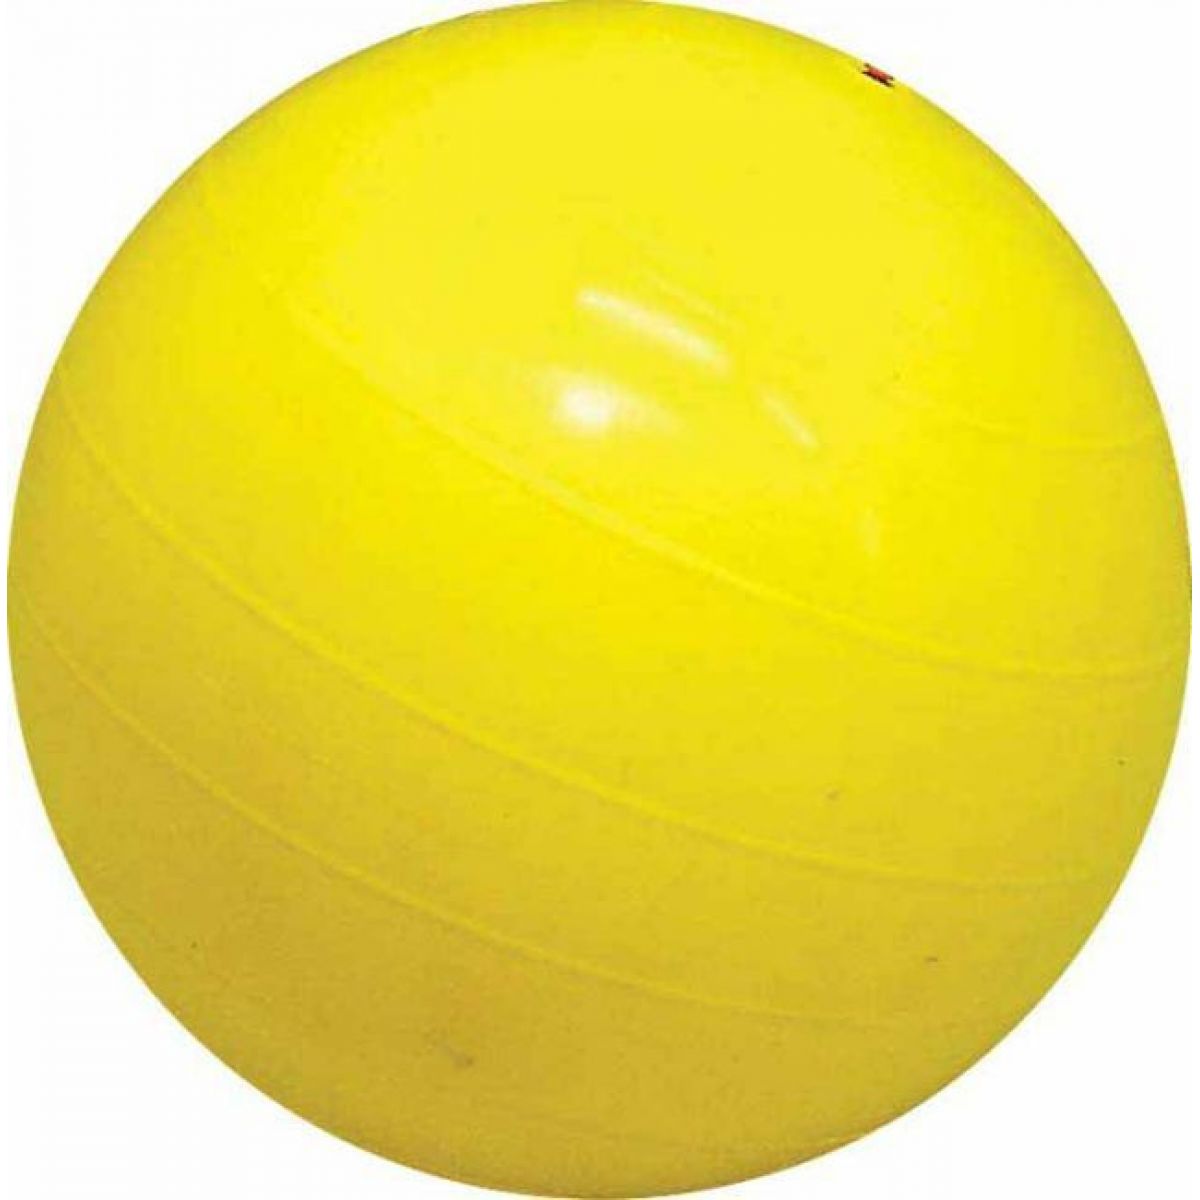 Gymnastický míč GIANT pr. 850mm